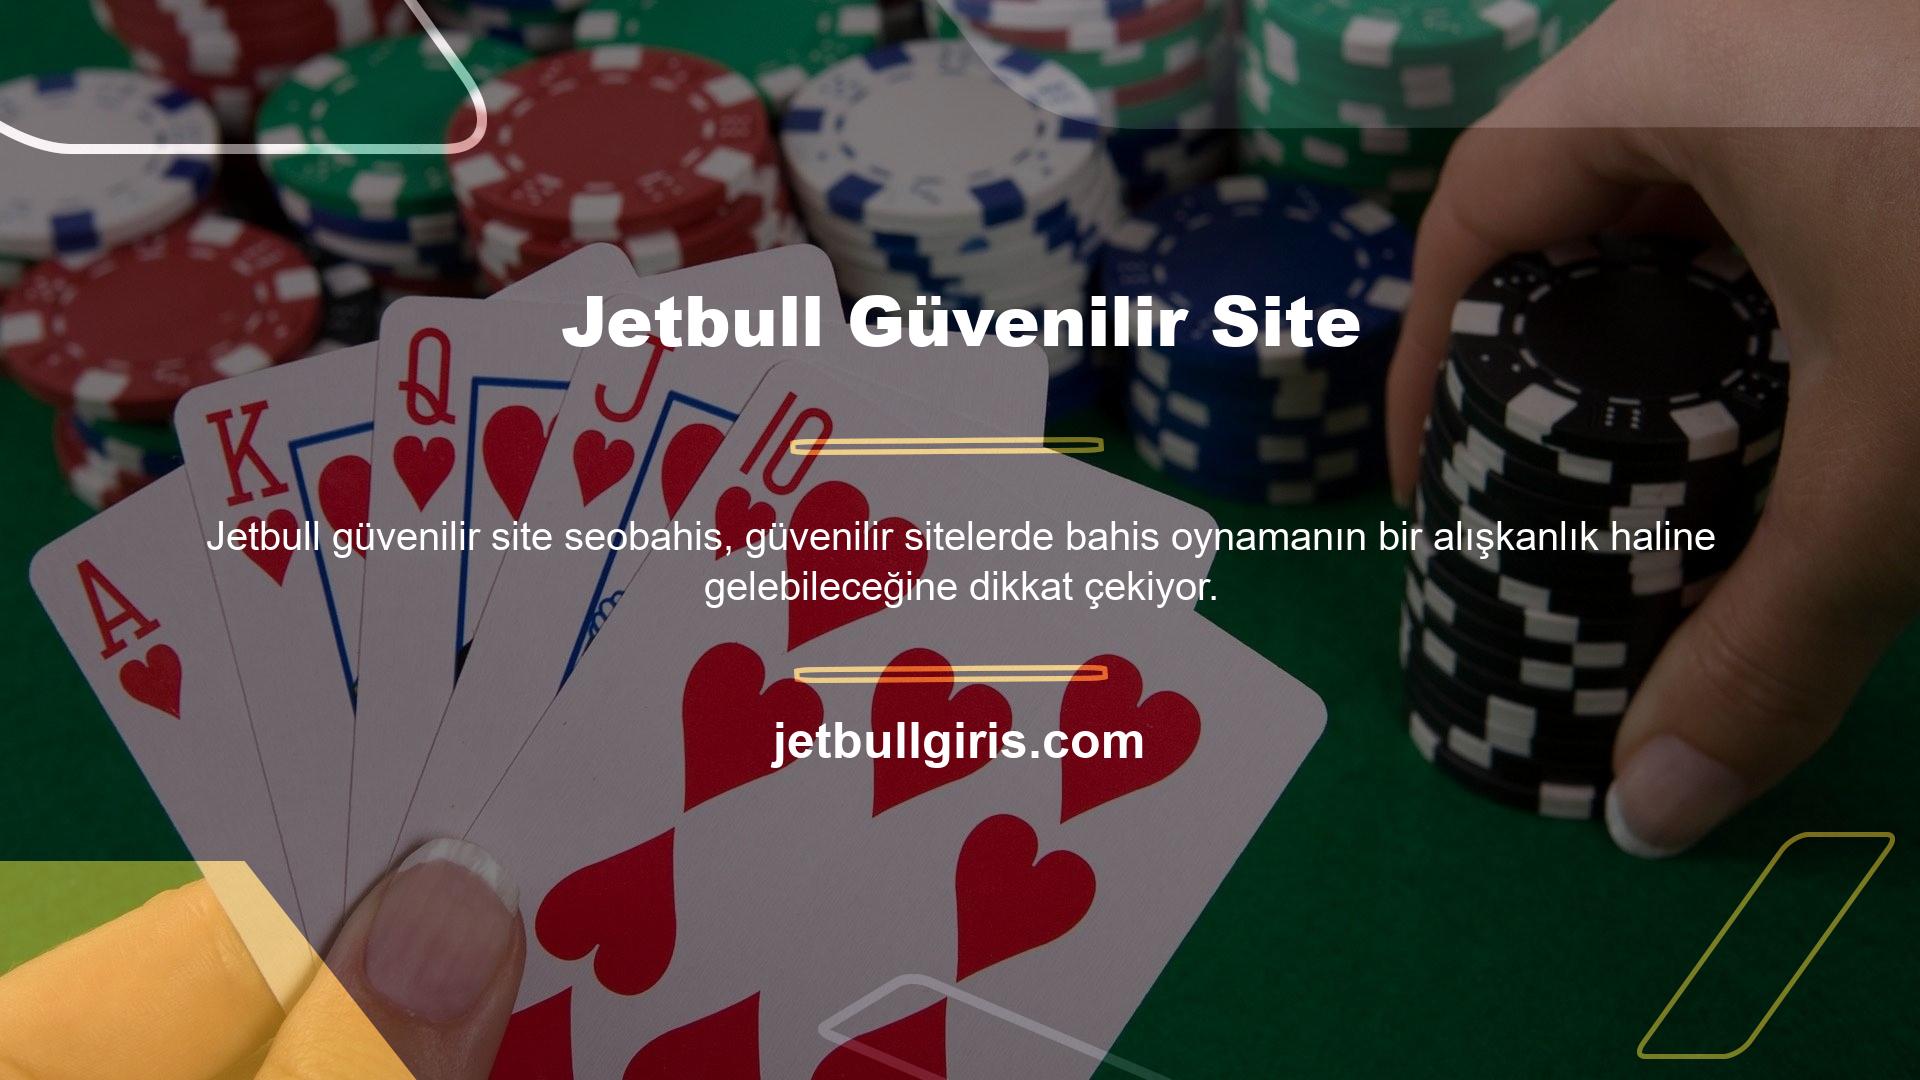 Jetbull, kullanıcılara çeşitli bahis seçenekleri ve yüksek kaliteli içerikle canlı bahis hizmeti sunmaktadır